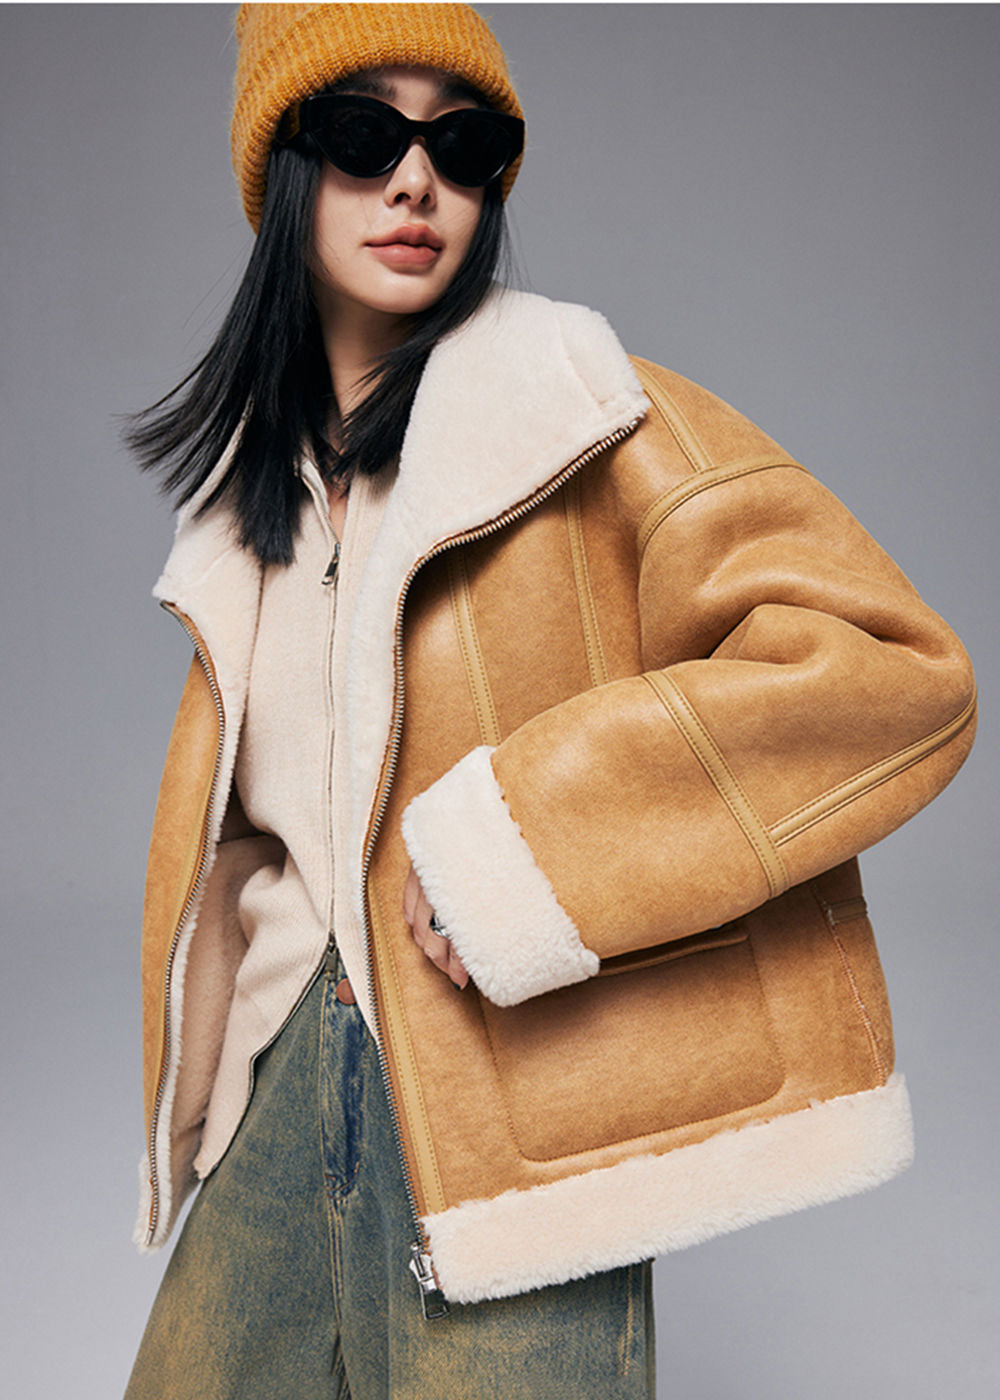 Fur Coat Women